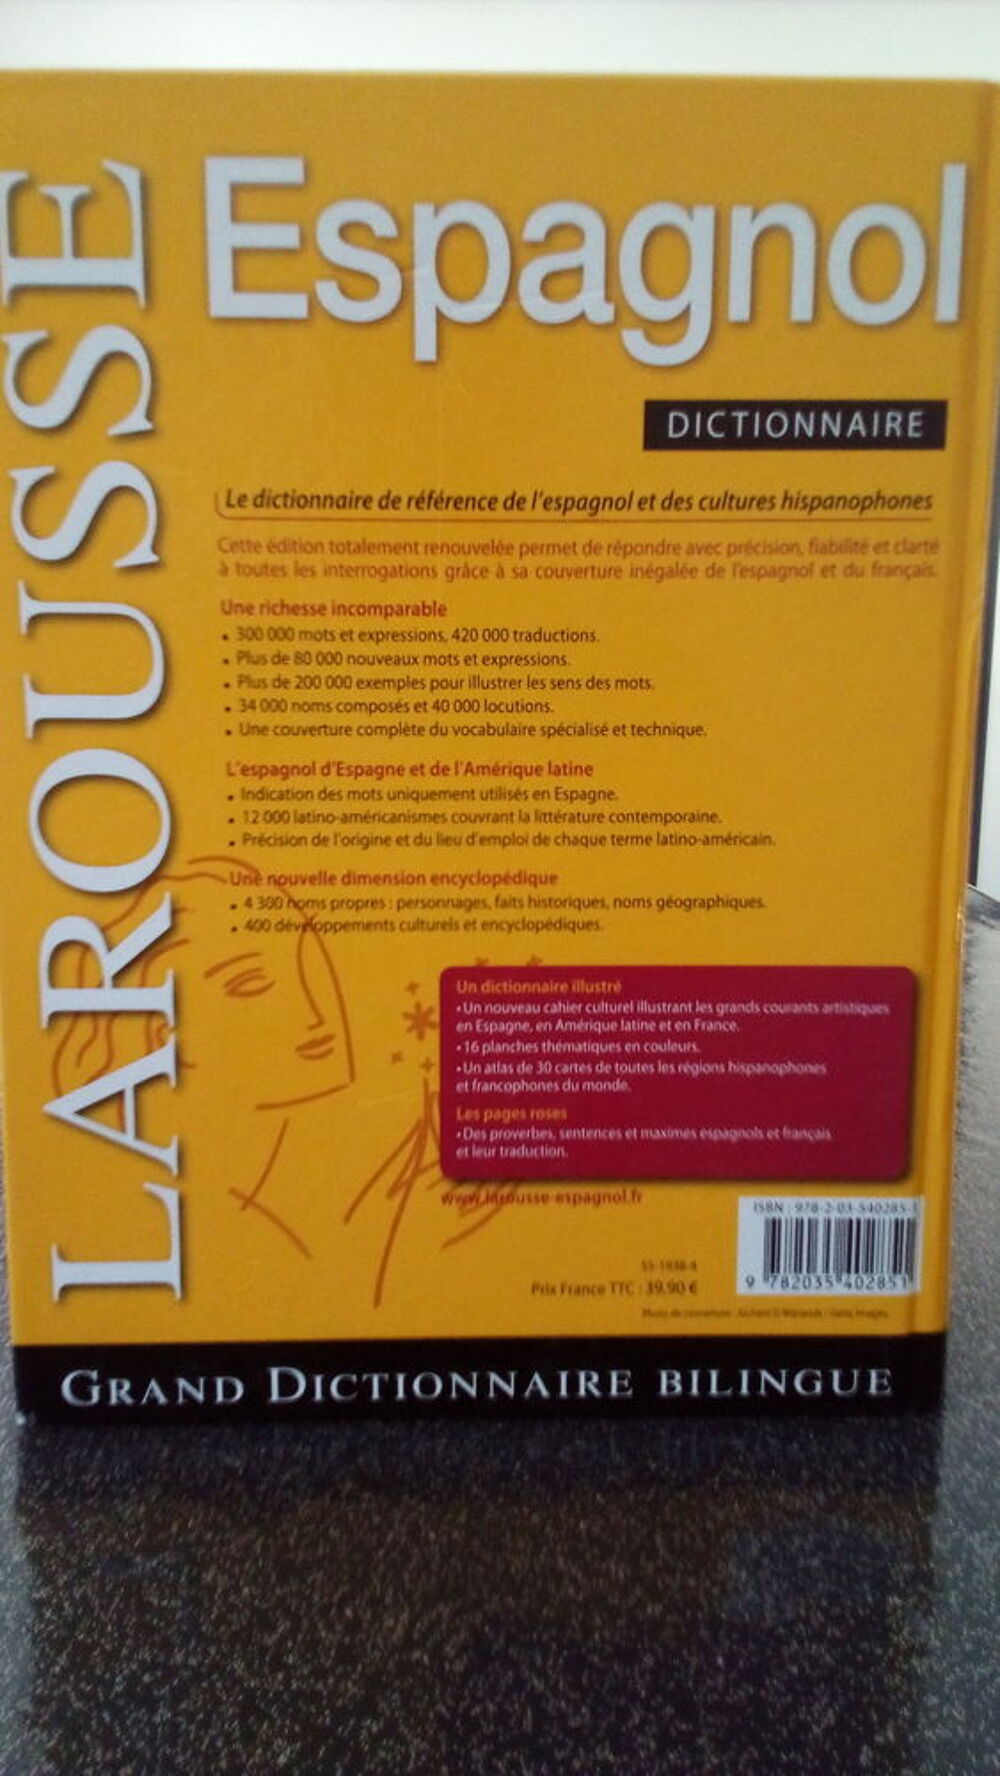 Grand Dictionnaire Bilingue Larousse
Livres et BD